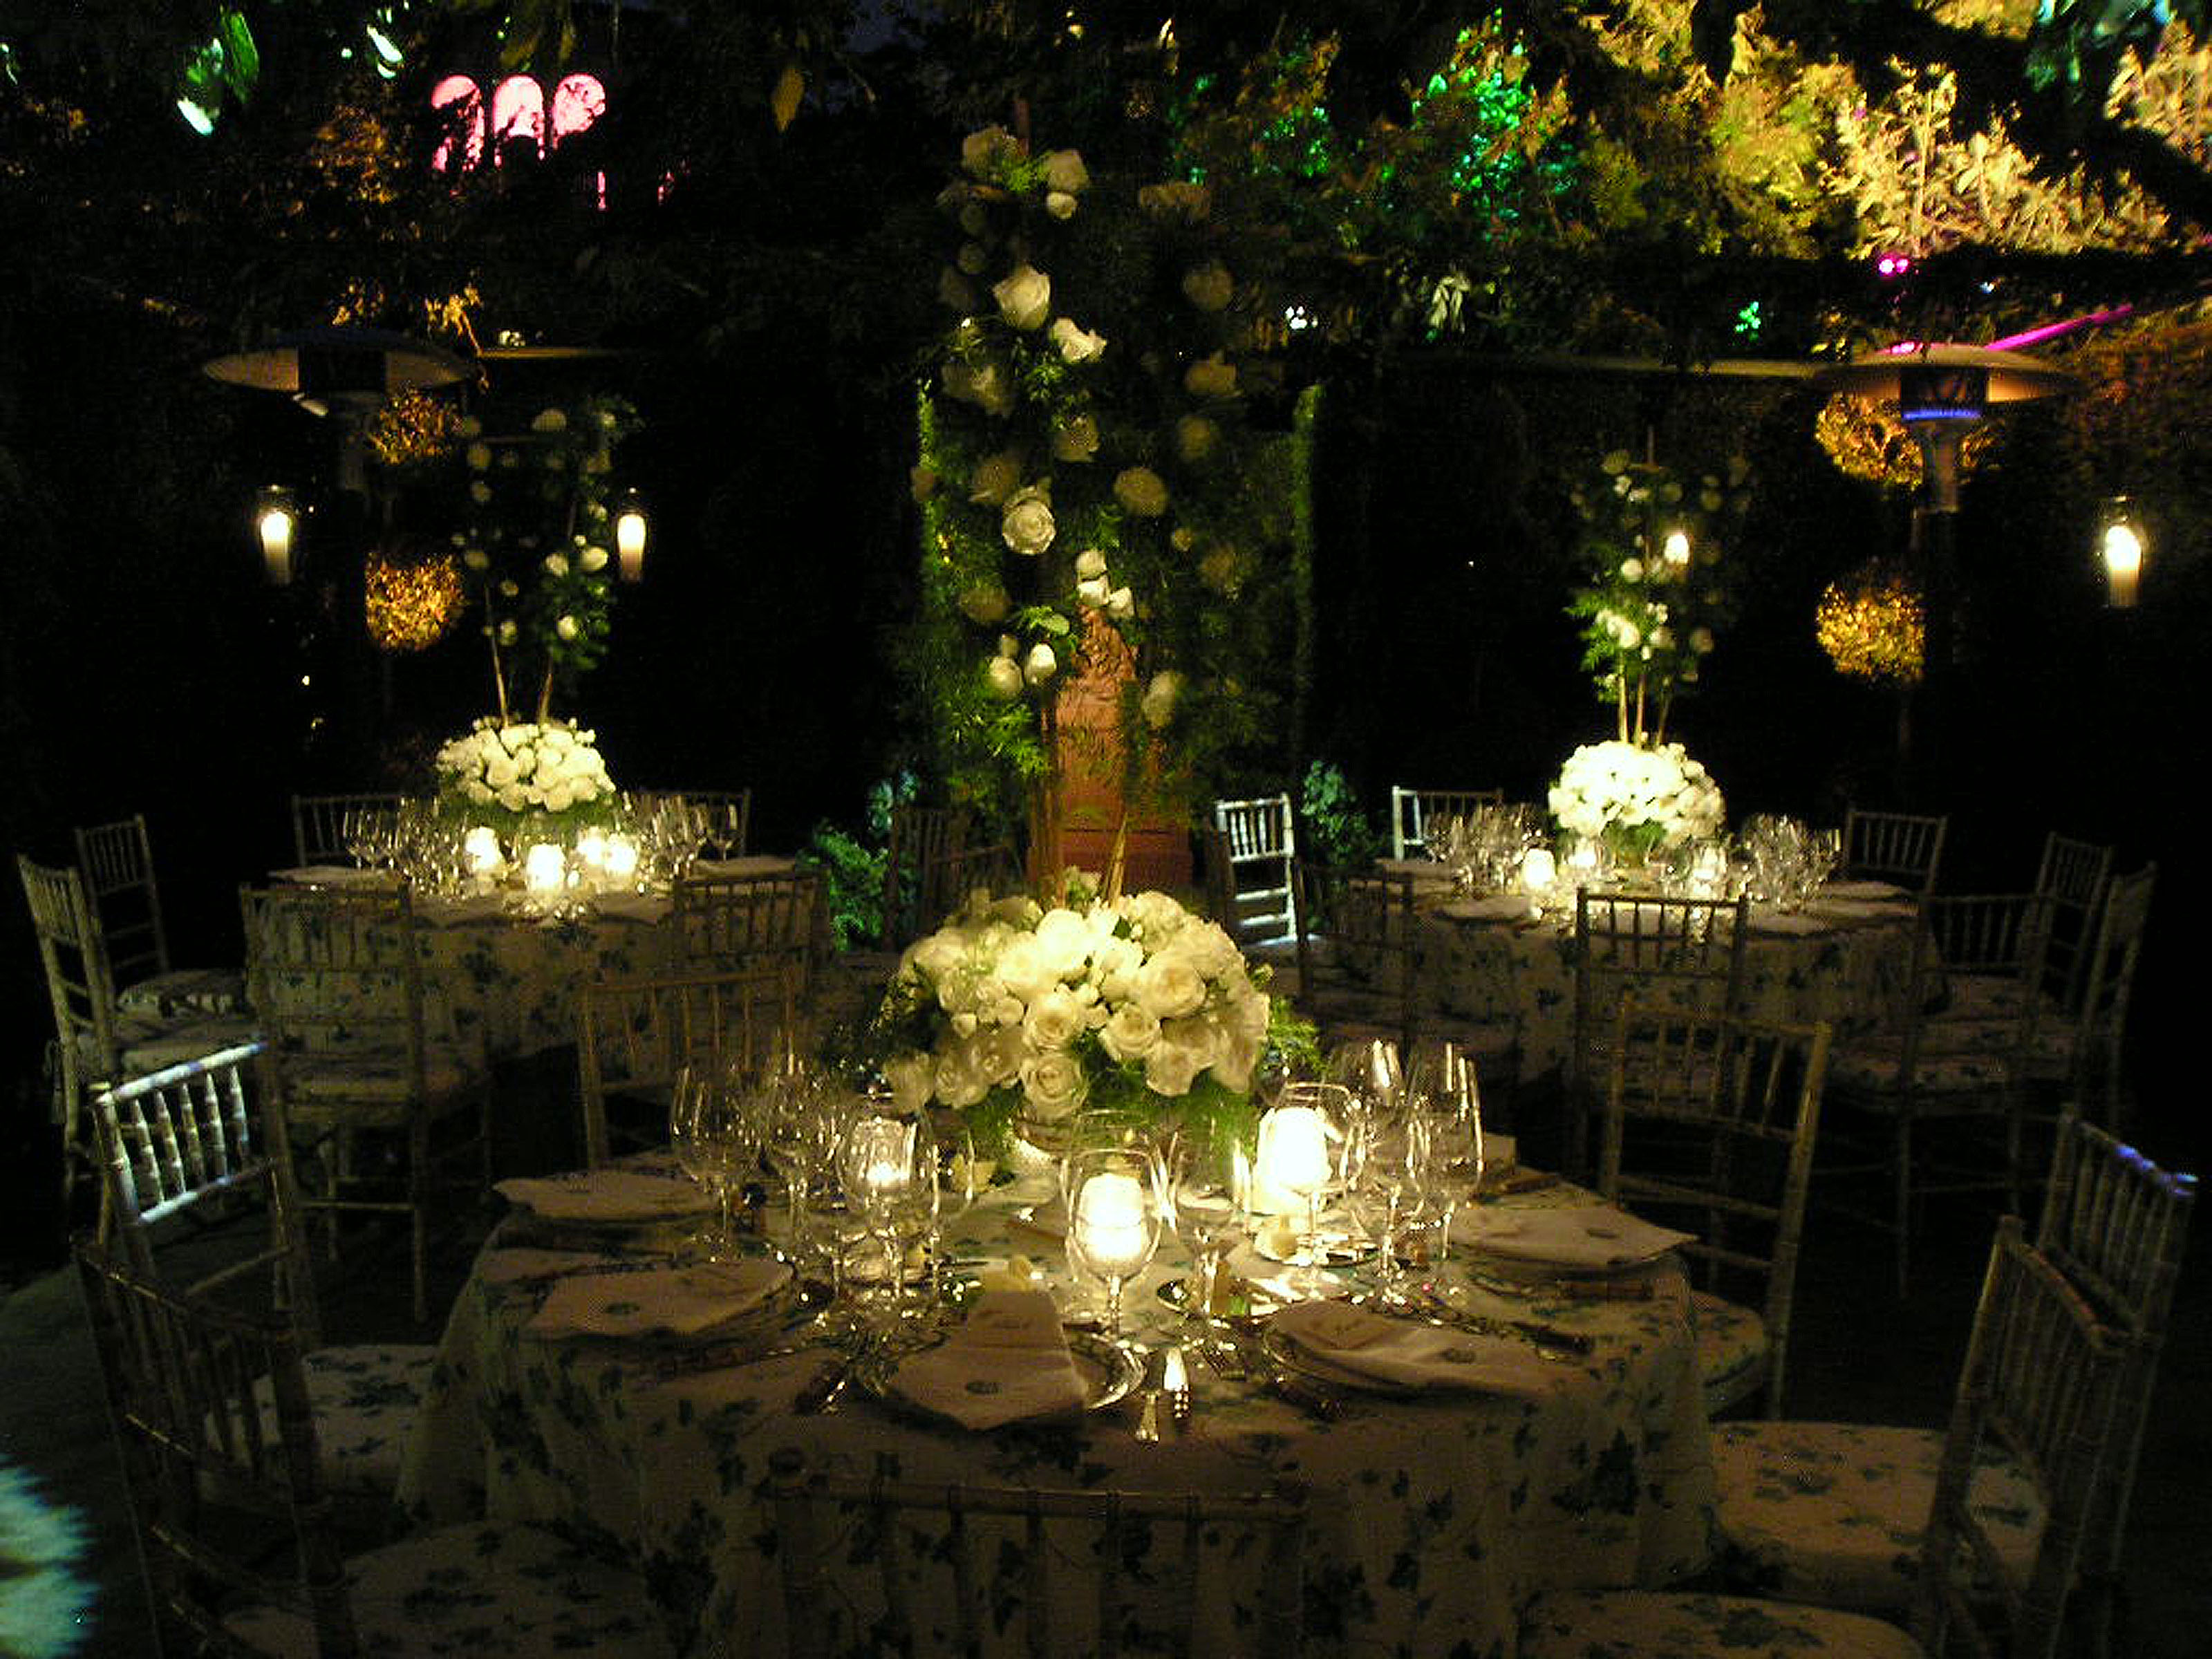 Idee Per Le Luci E Le Decorazioni Outdoor Wedding Lighting Outdoor Wedding Decorations Garden Wedding Decorations